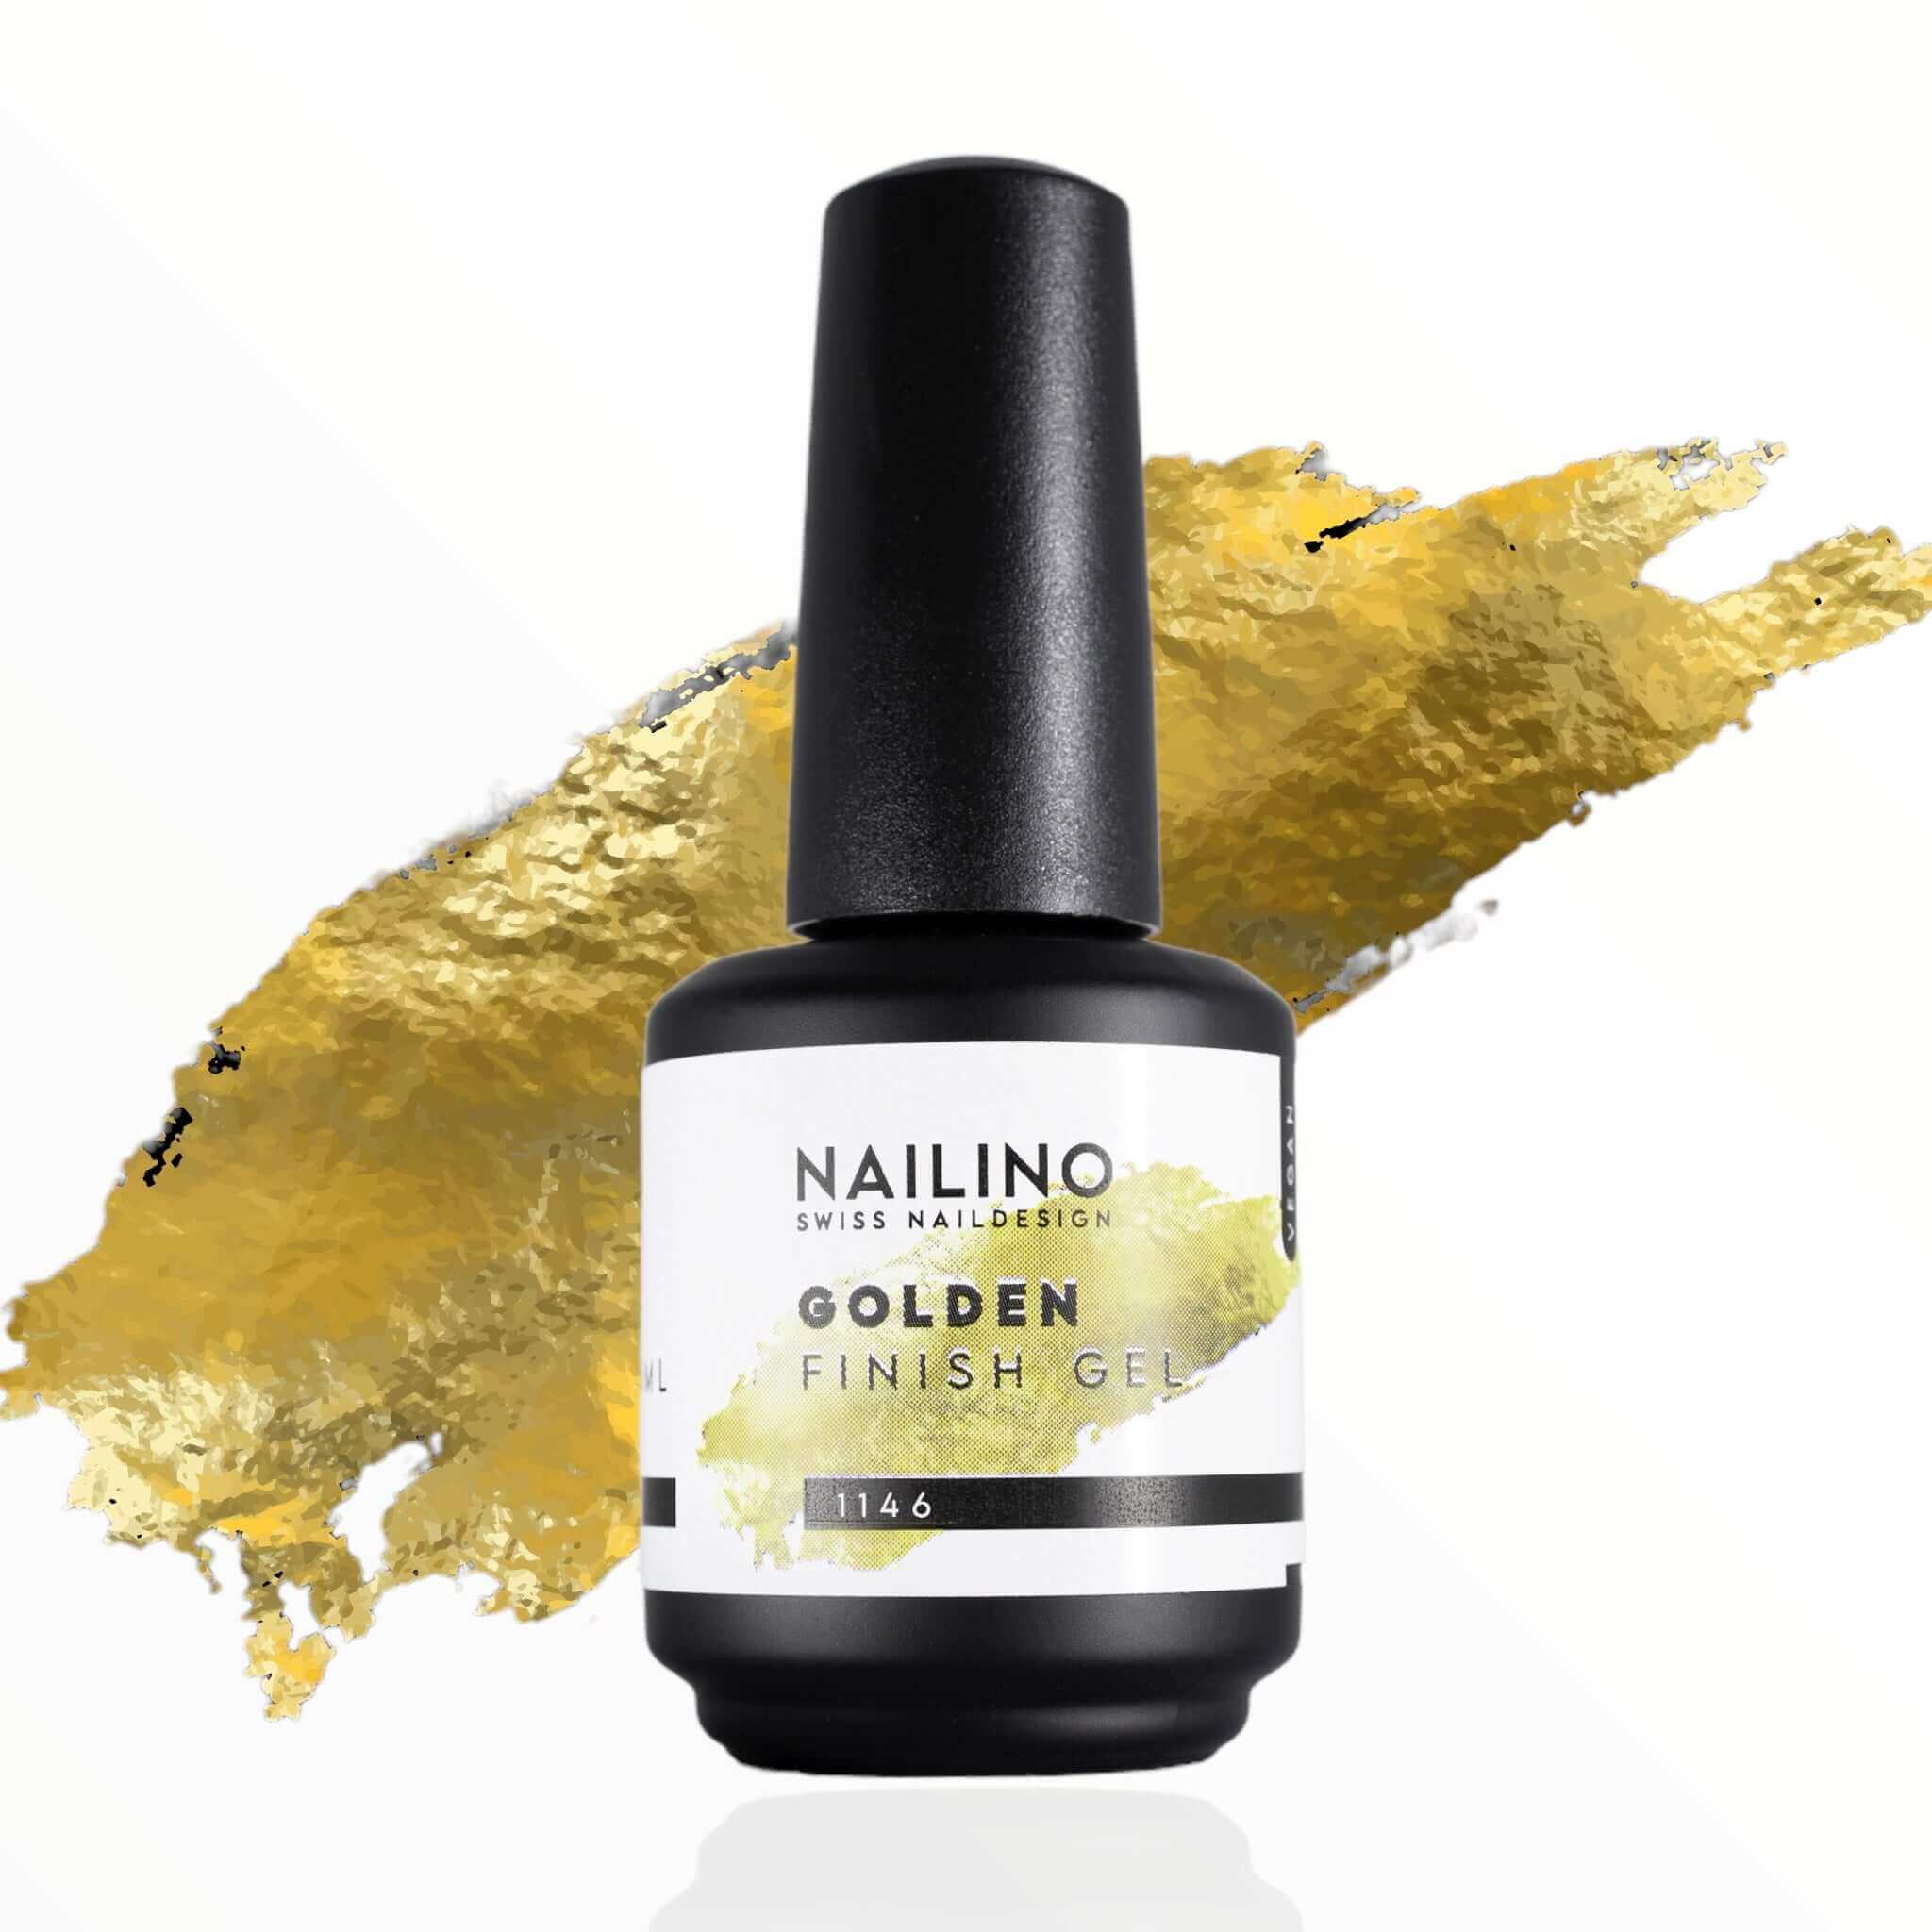 NAILINO Finish Gel Golden Gloss Versiegelungsgel